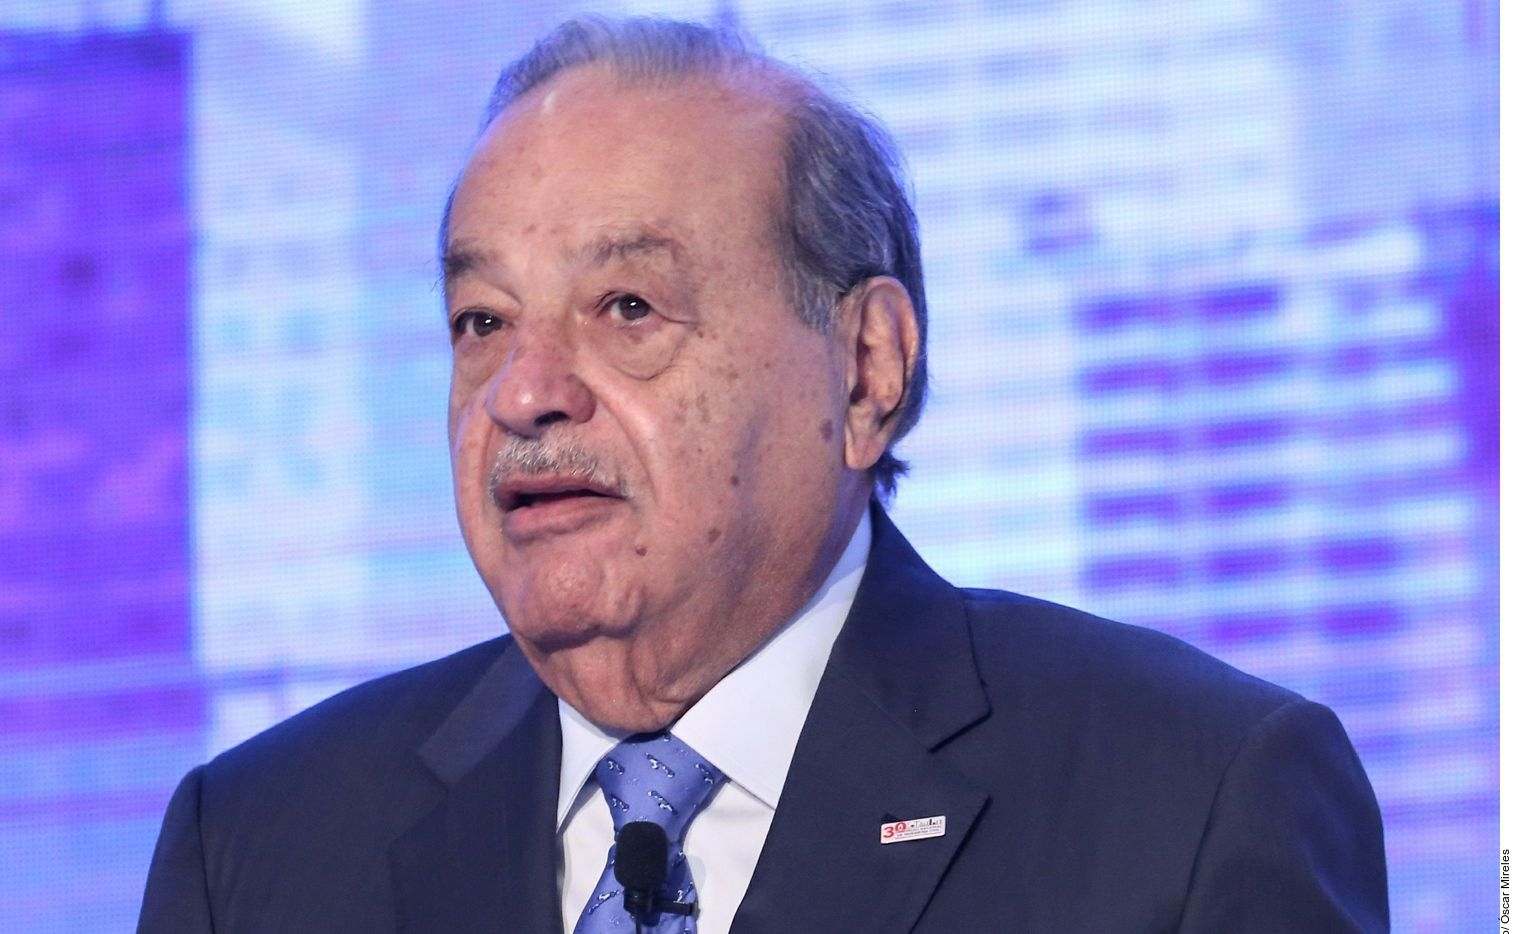 Mandan mensajes de apoyo a Carlos Slim en redes sociales